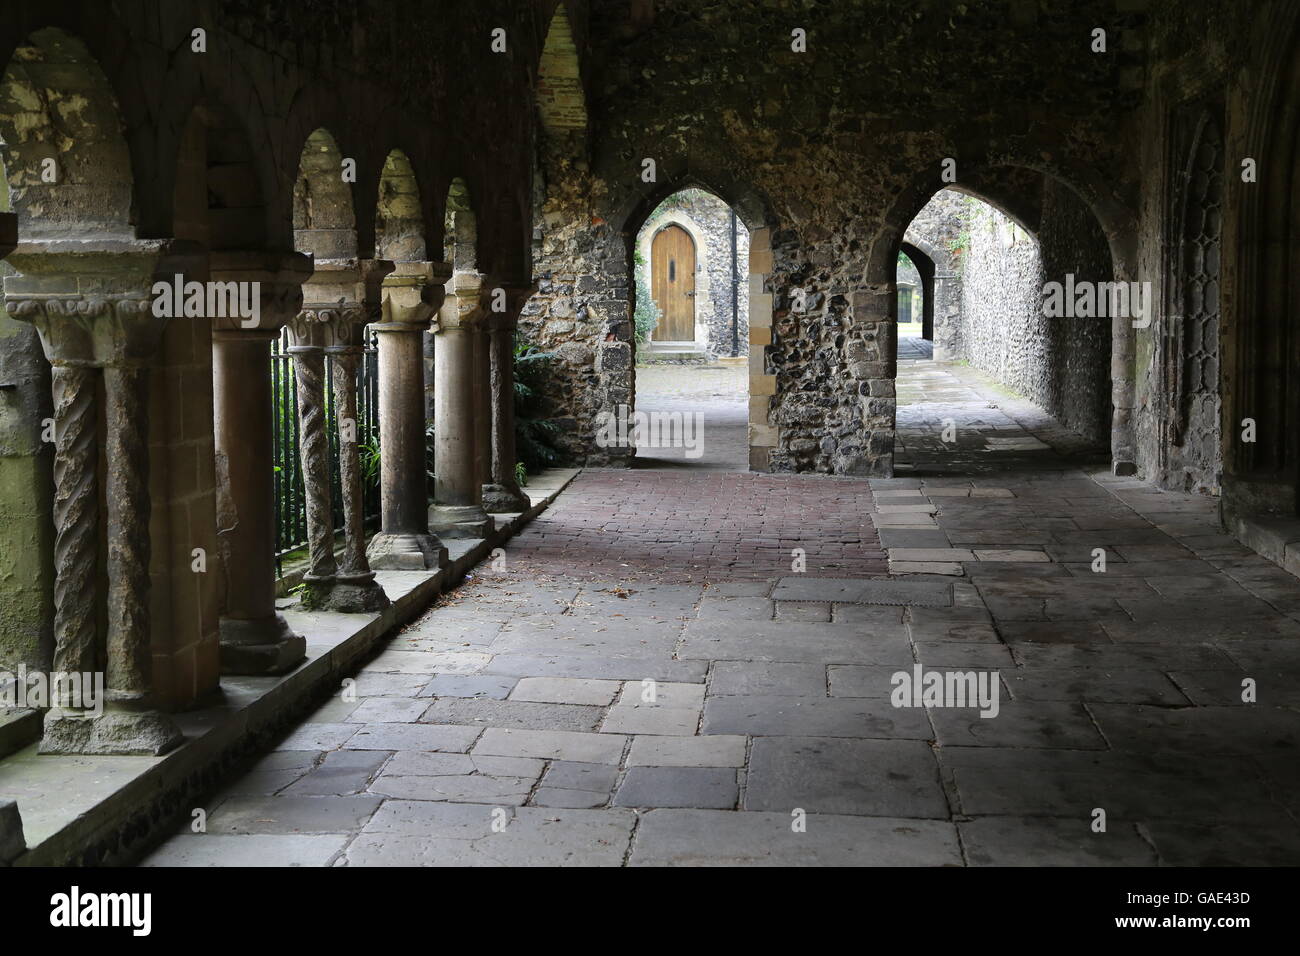 Le cloître de la Cathédrale de Canterbury offrent toujours un endroit frais, endroit calme. Banque D'Images